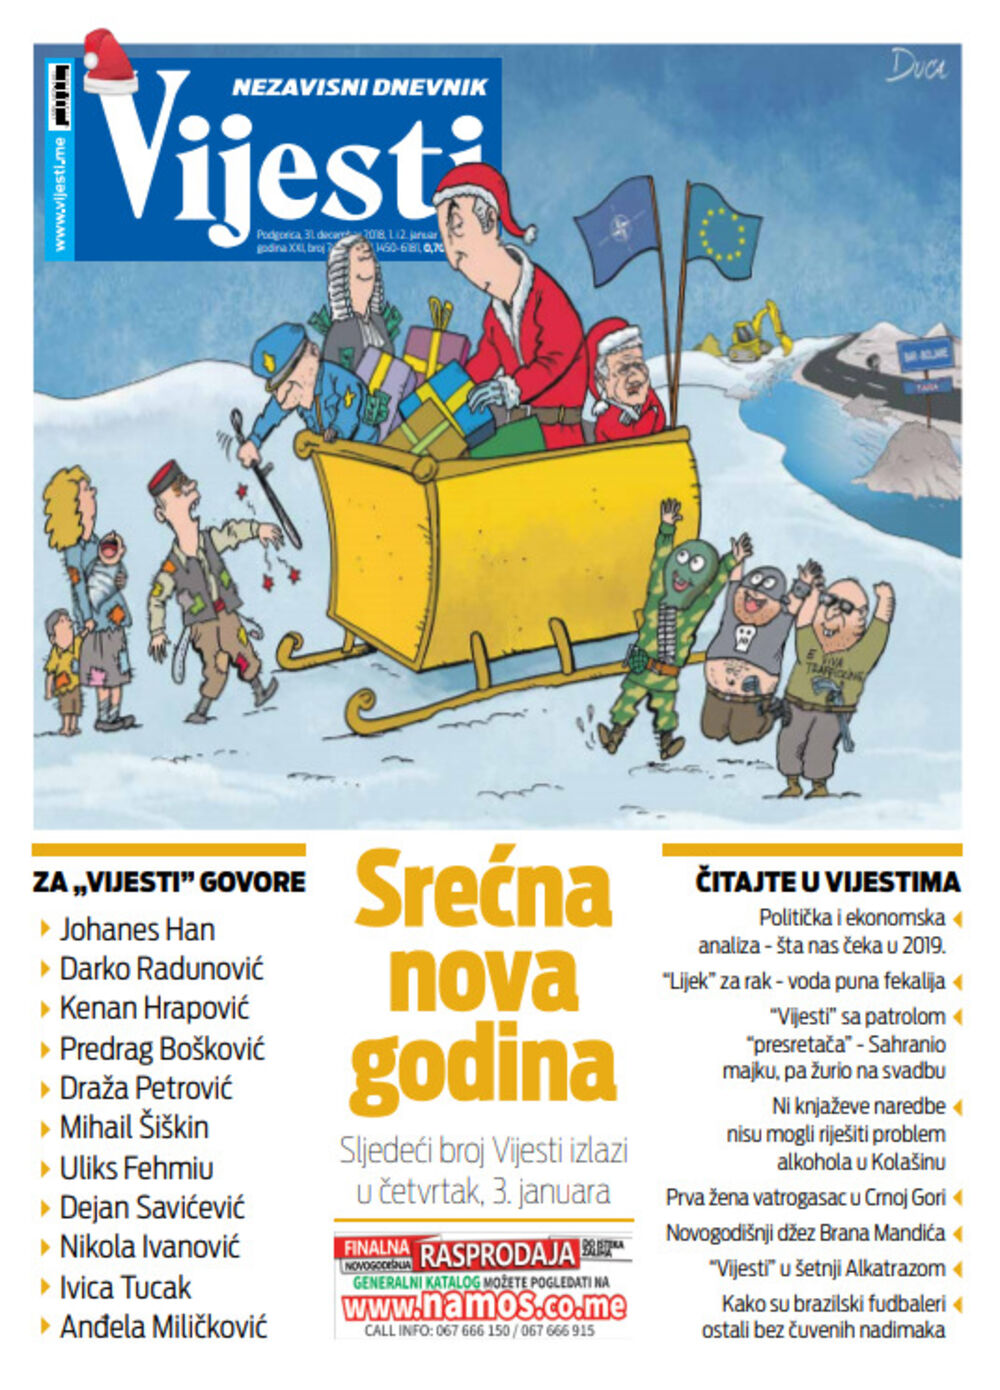 Naslovna strana "Vijesti" za 31. decembar, prvi i drugi januar, Foto: Vijesti